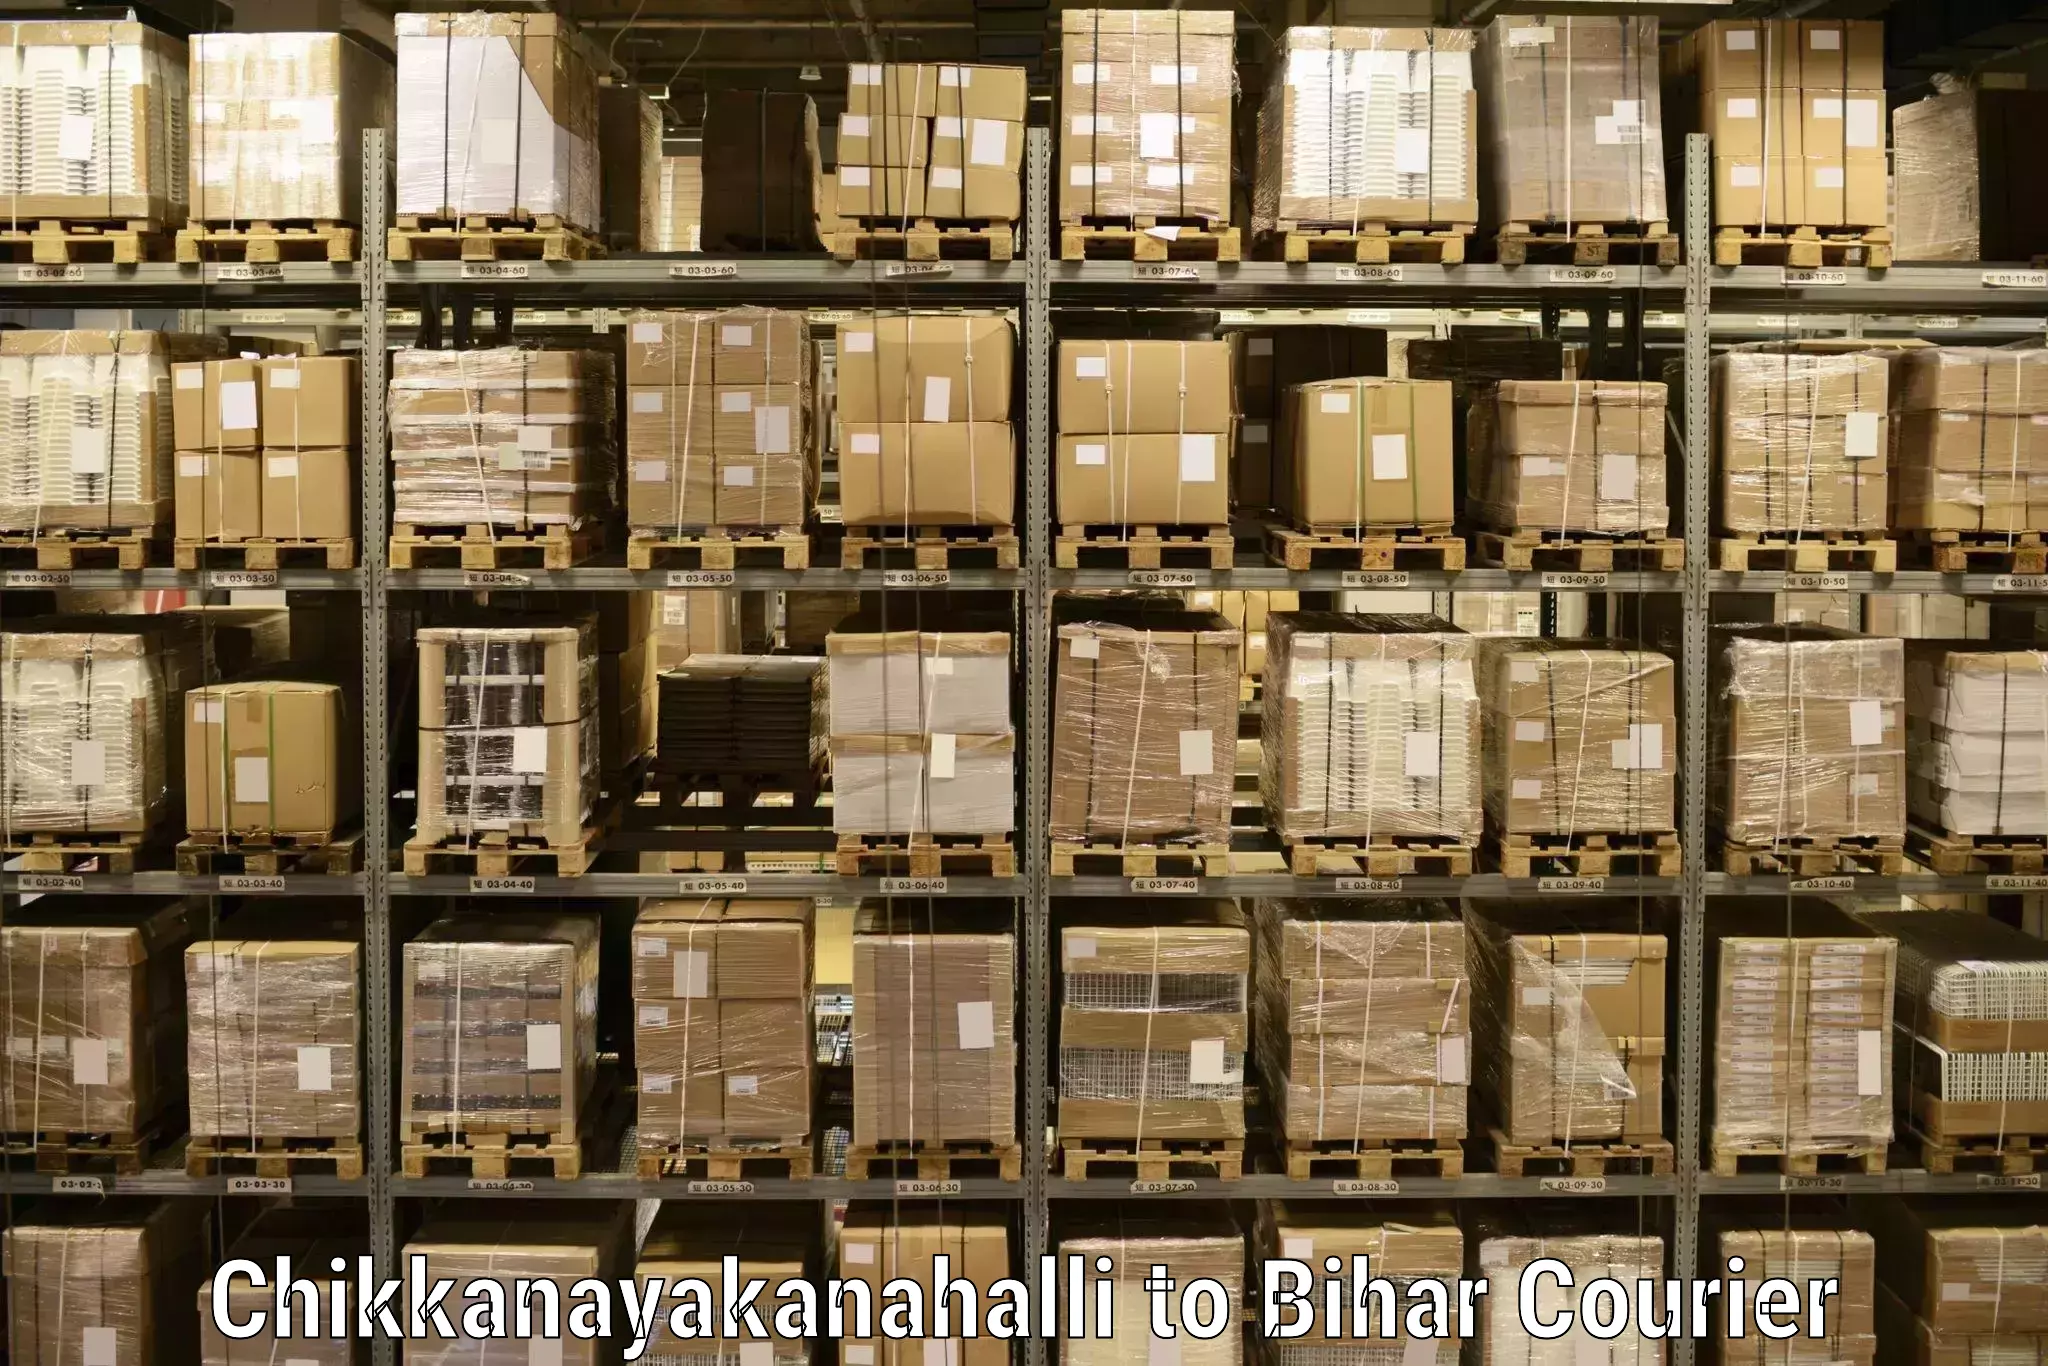 Cargo delivery service Chikkanayakanahalli to Rusera